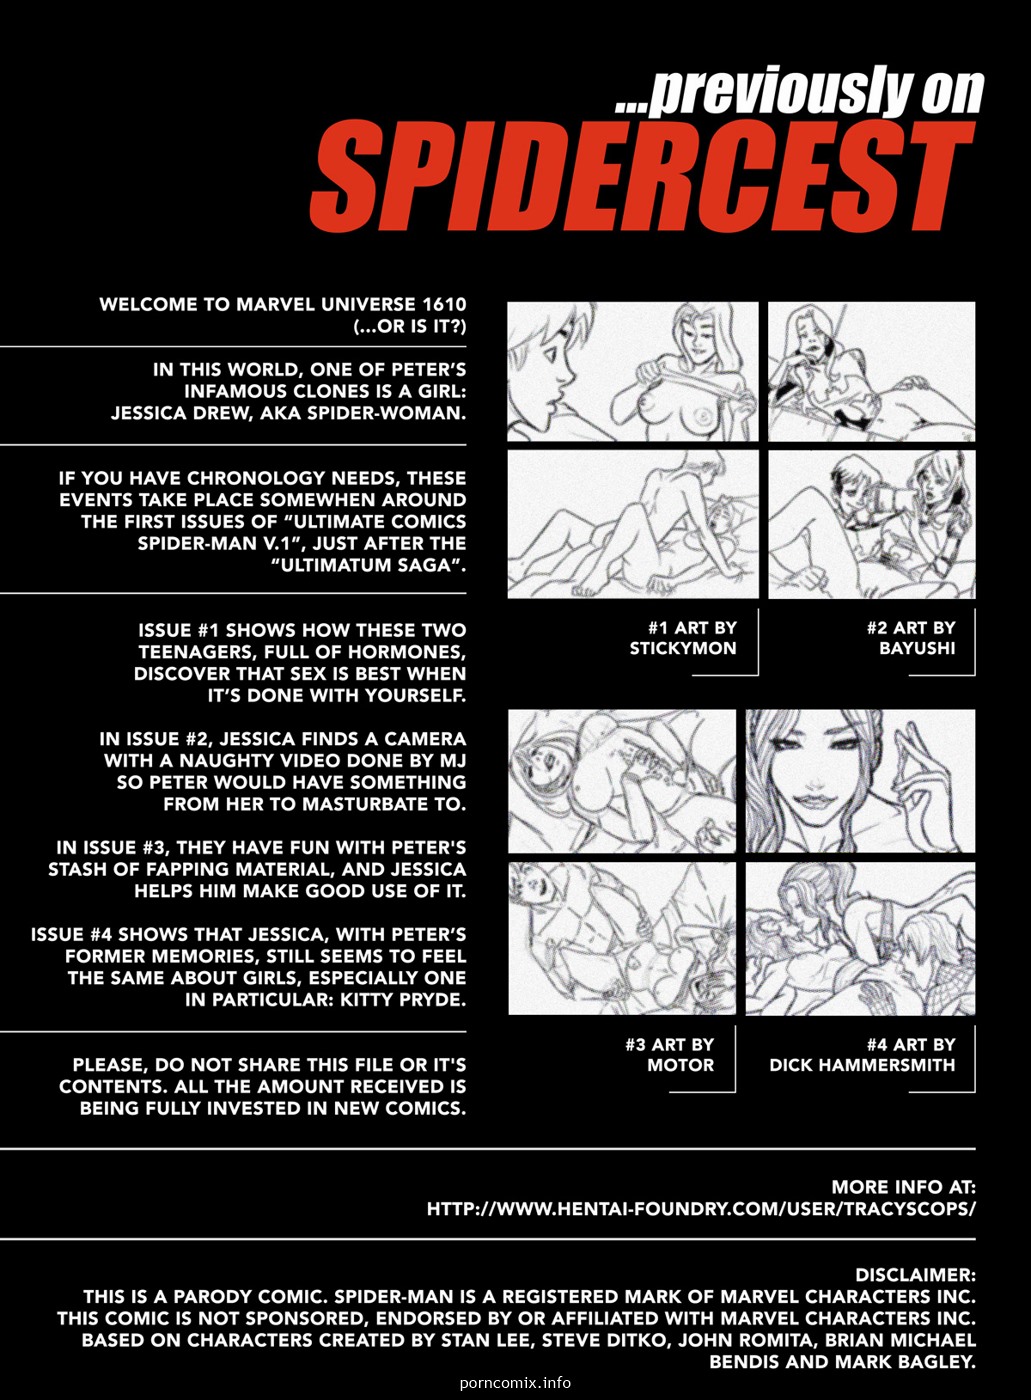 spidercest 5 phaser set zu cum, Spiderman